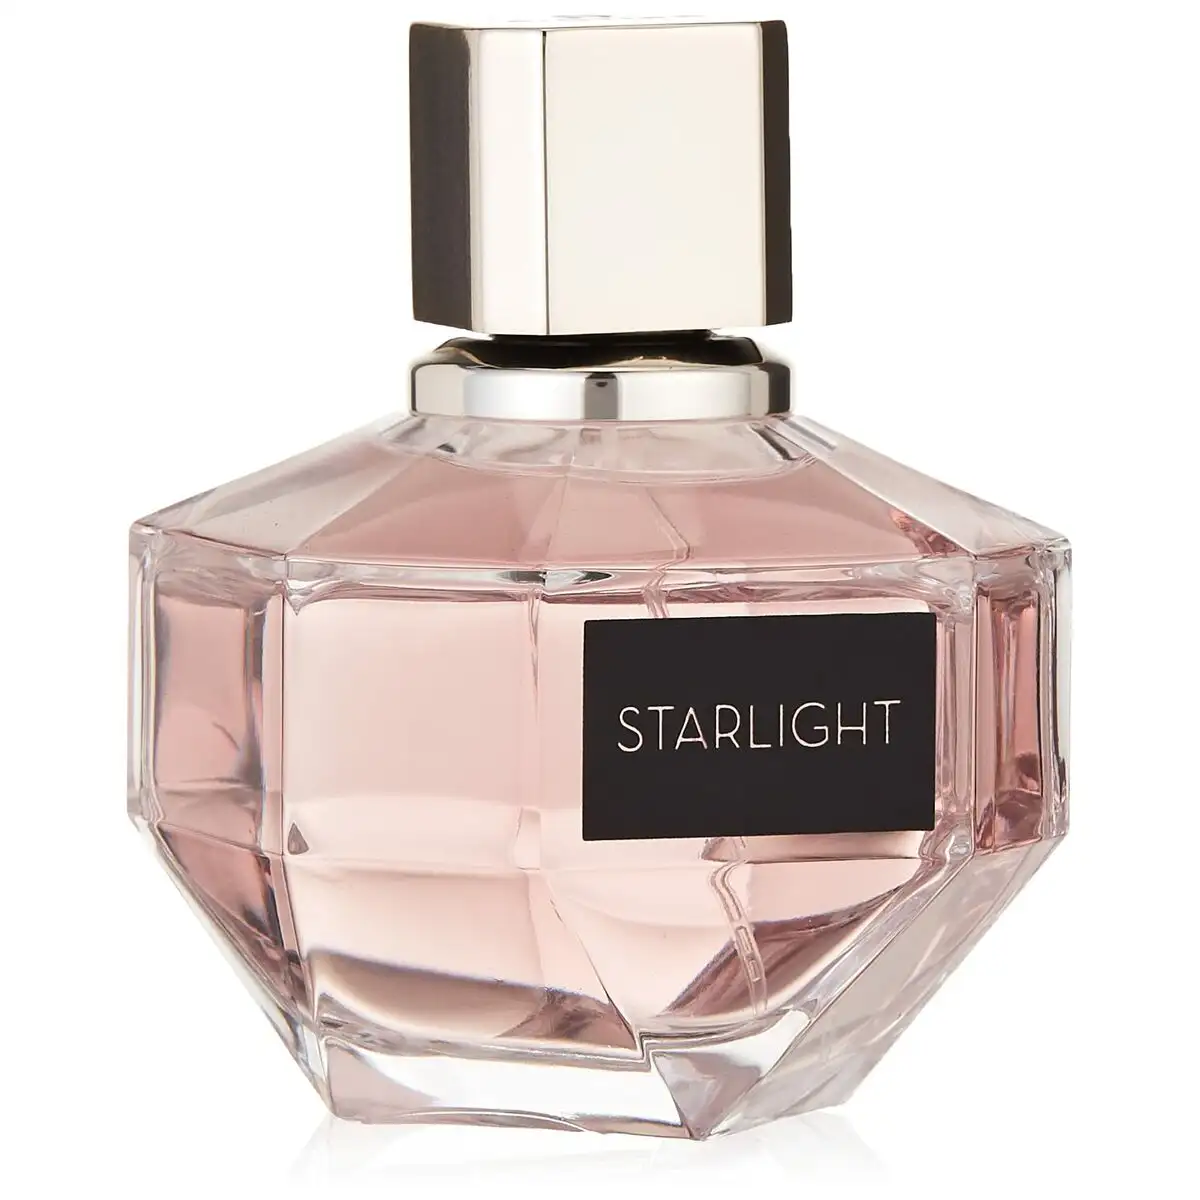 Parfum femme aigner parfums edp starlight 60 ml_2611. DIAYTAR SENEGAL - L'Art de Vivre en Couleurs. Découvrez notre boutique en ligne et trouvez des produits qui ajoutent une palette vibrante à votre quotidien.